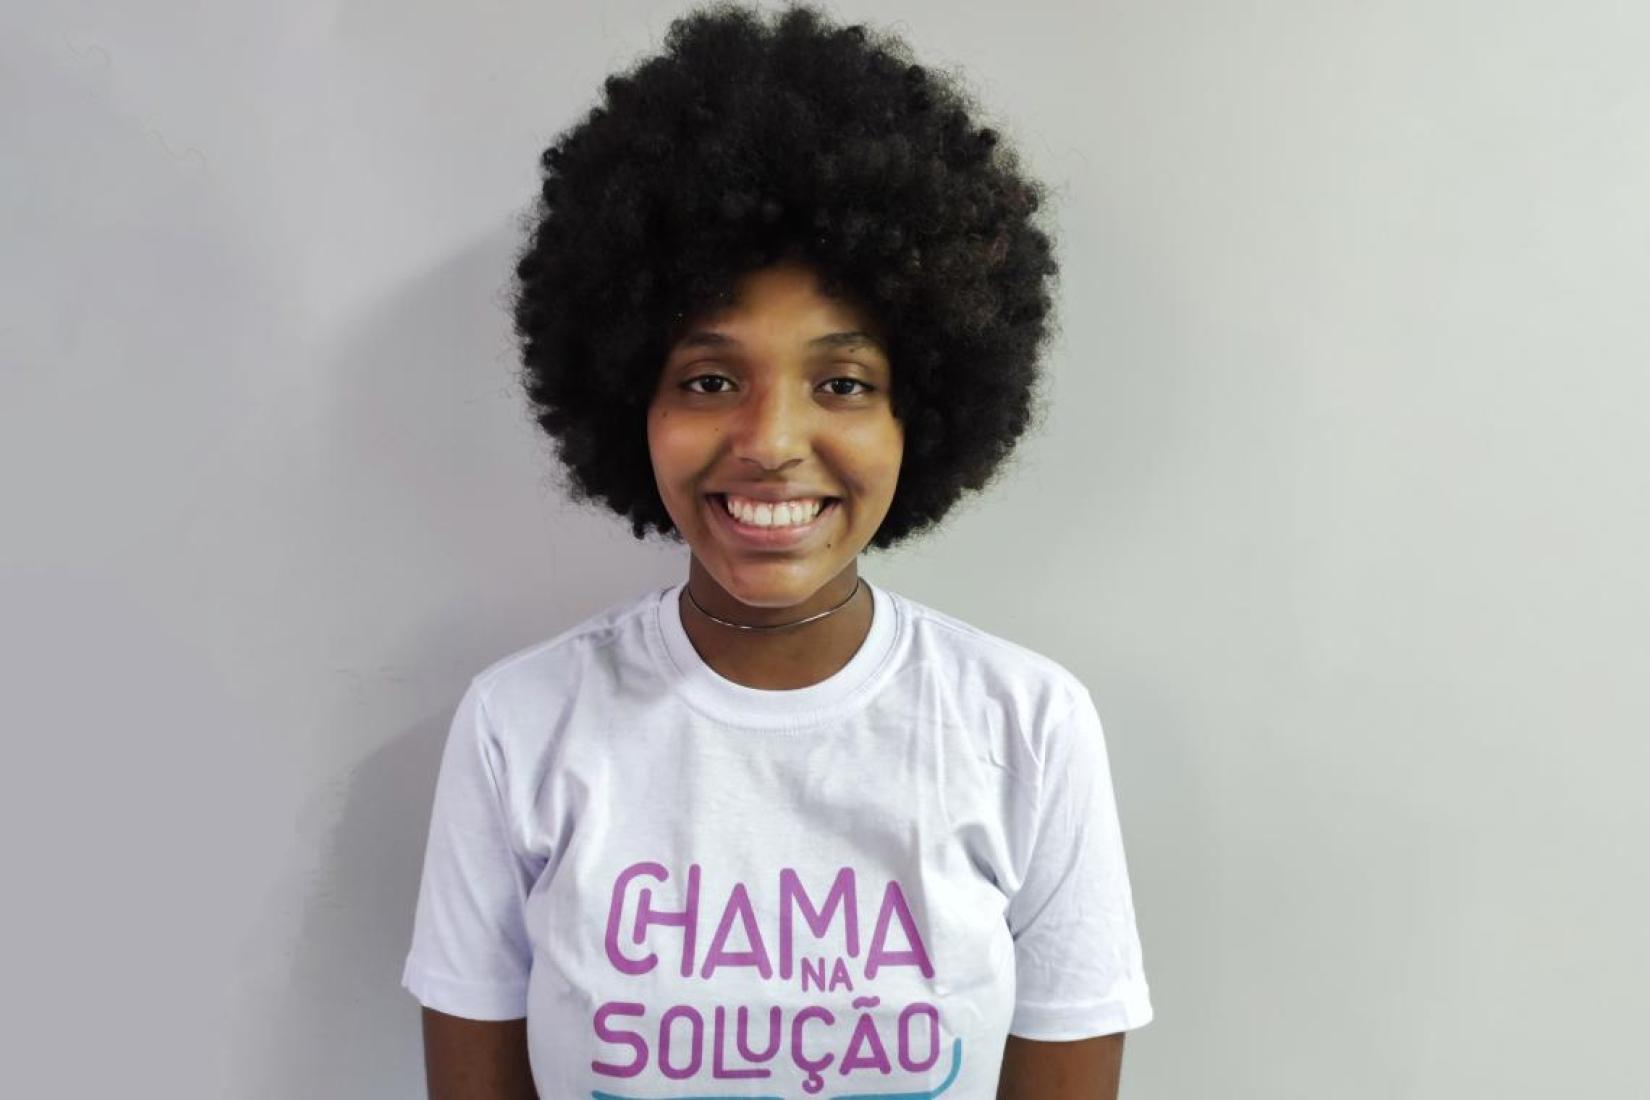 Divulgar informação sobre as violências e os serviços de ajuda e denúncia é motivo de orgulho para a jovem Nathalia da Silva Araújo, do Chama na Solução Rio.